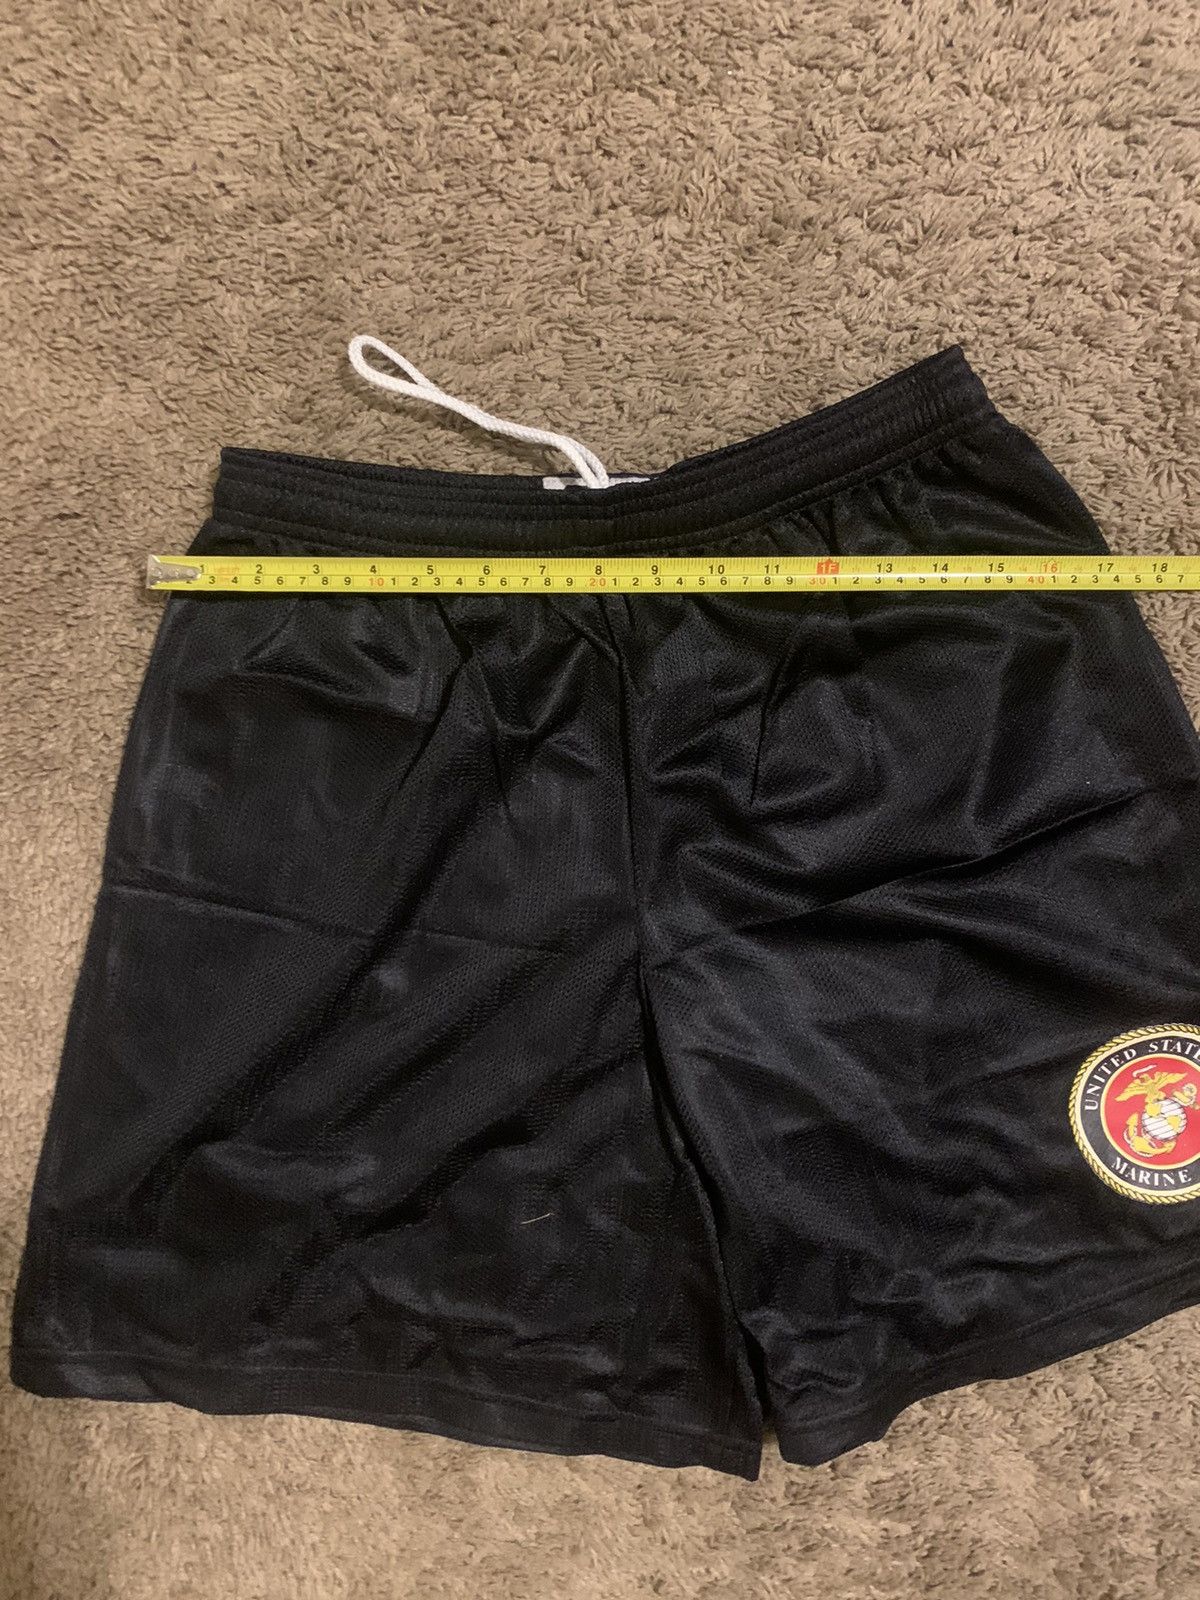 Jerzees Vintage United States marine corps shorts 90s size medium Size US 34 / EU 50 - 4 Thumbnail